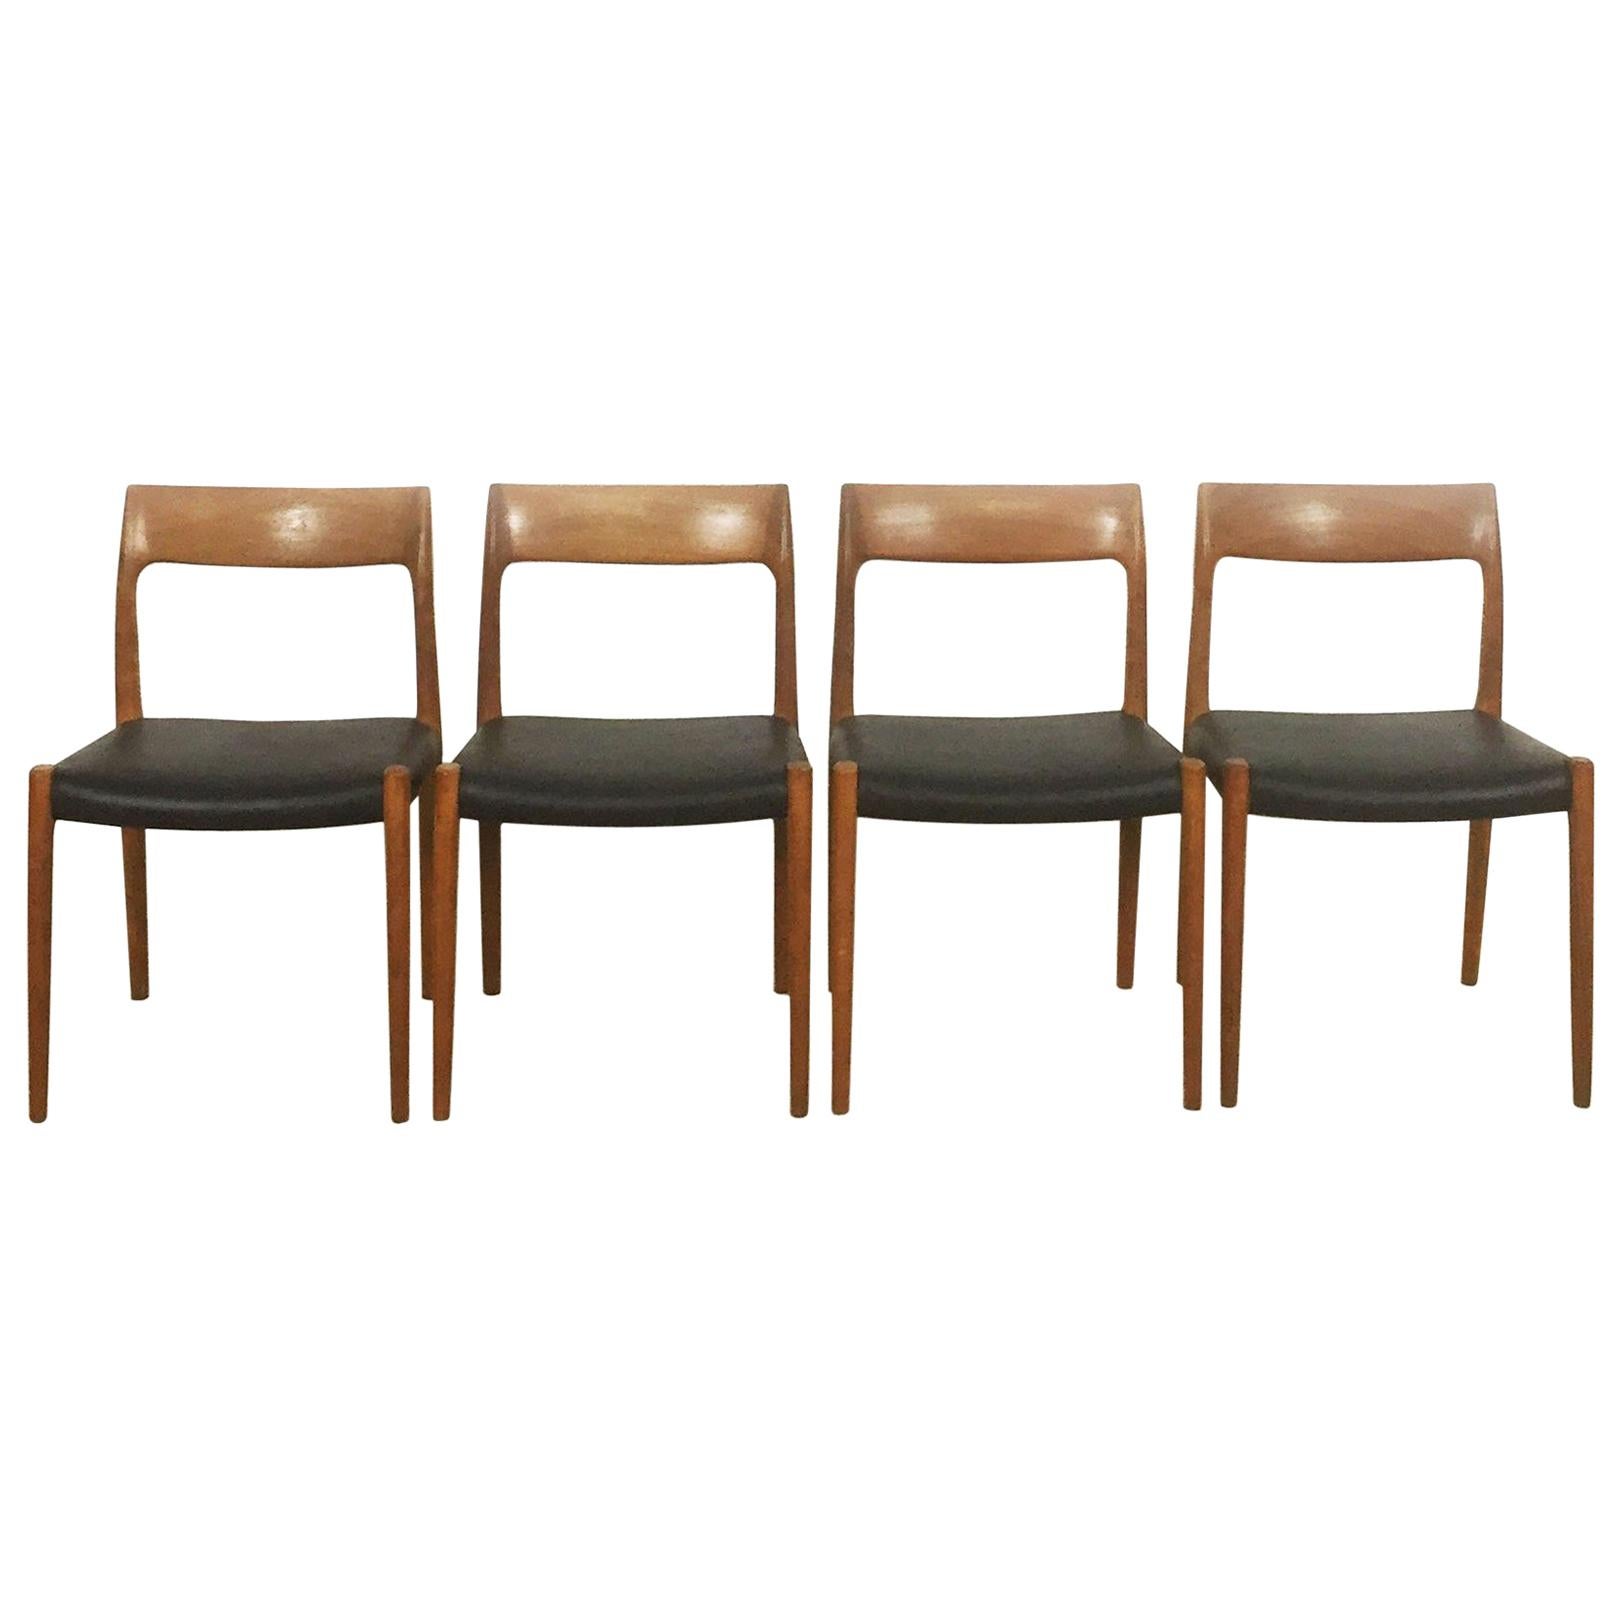 Teak Chair No. 77, Set of Four, Niels Moller for Moller Models Denmark, 1960s